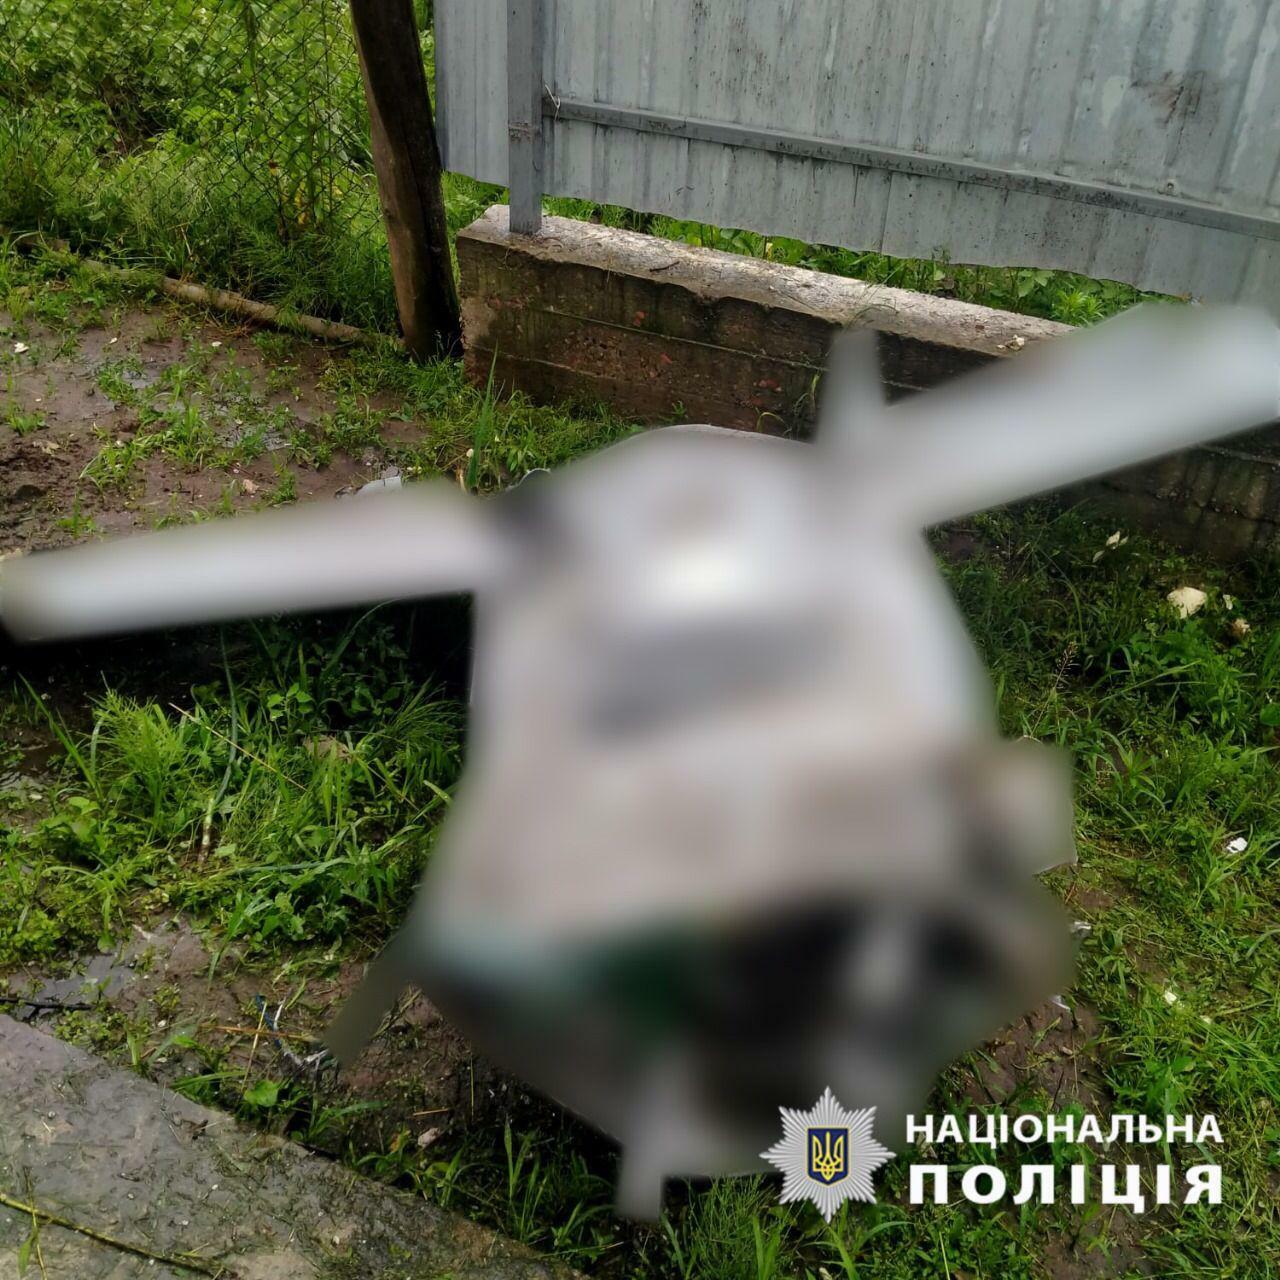 ウクライナ国家警察よりロシア軍のKh-101巡航ミサイルの胴体中央部（モザイク処理）